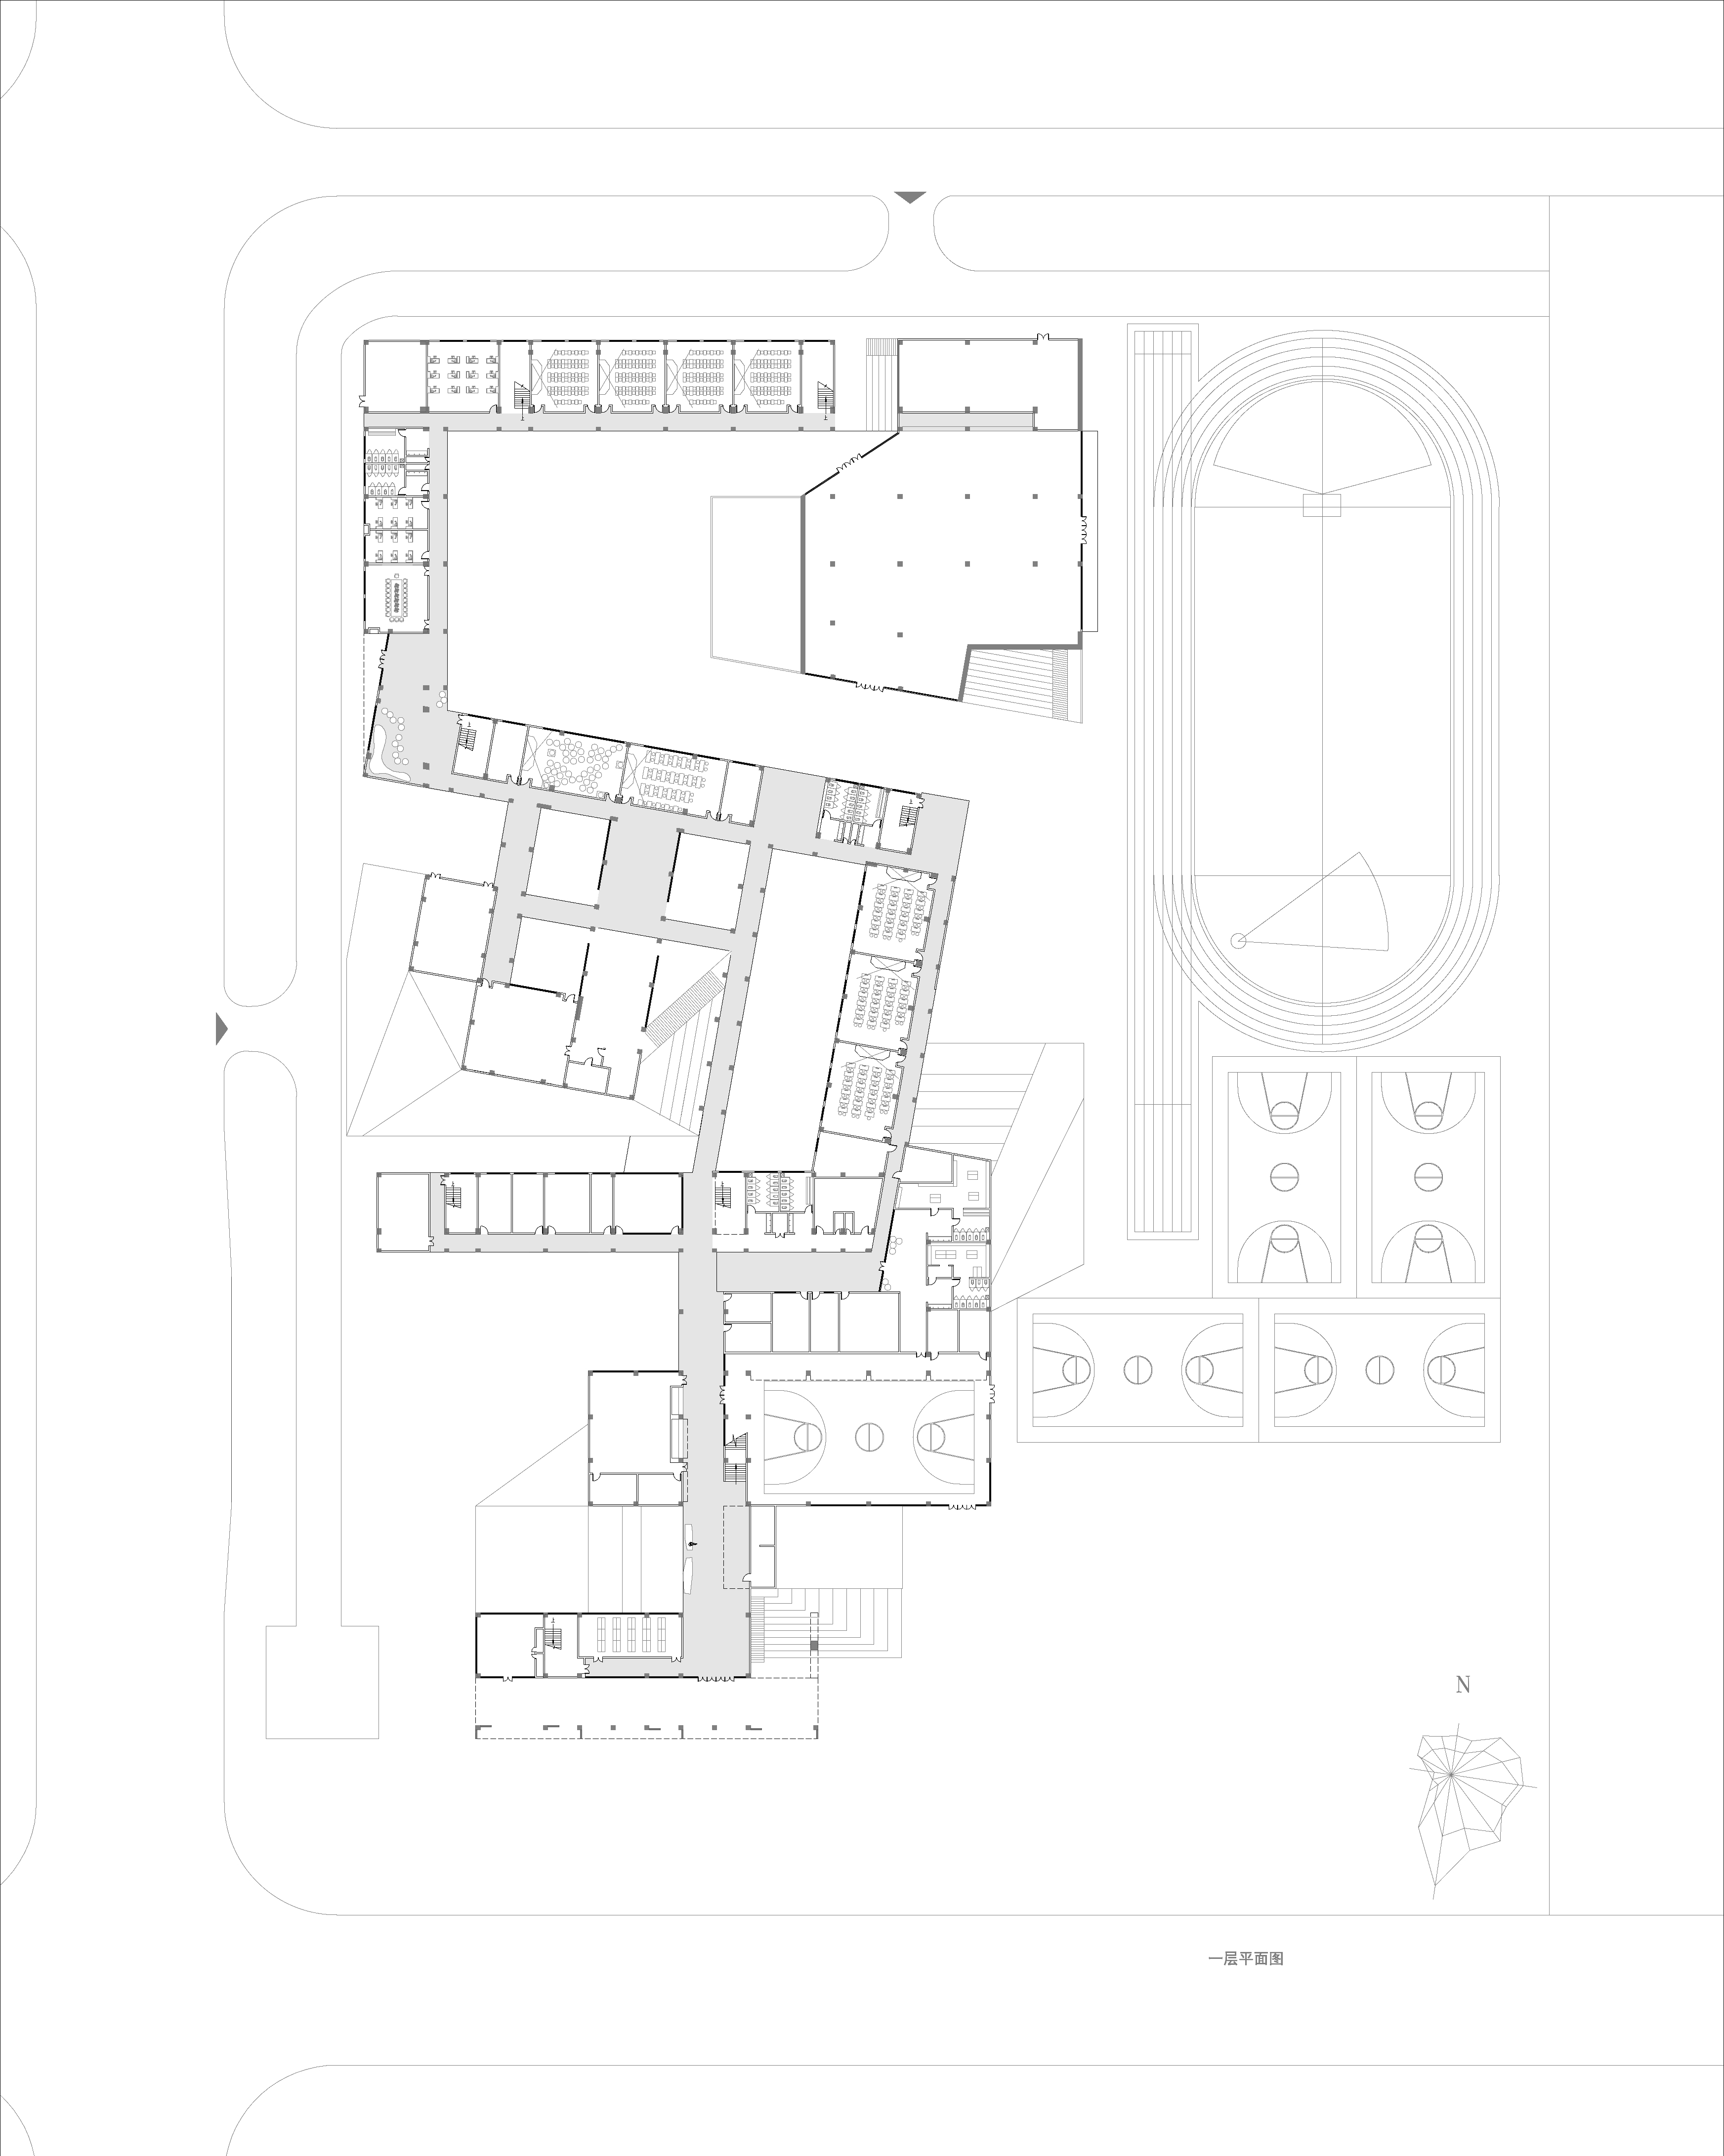 小学一层平面-primary school ground floor plan.jpg